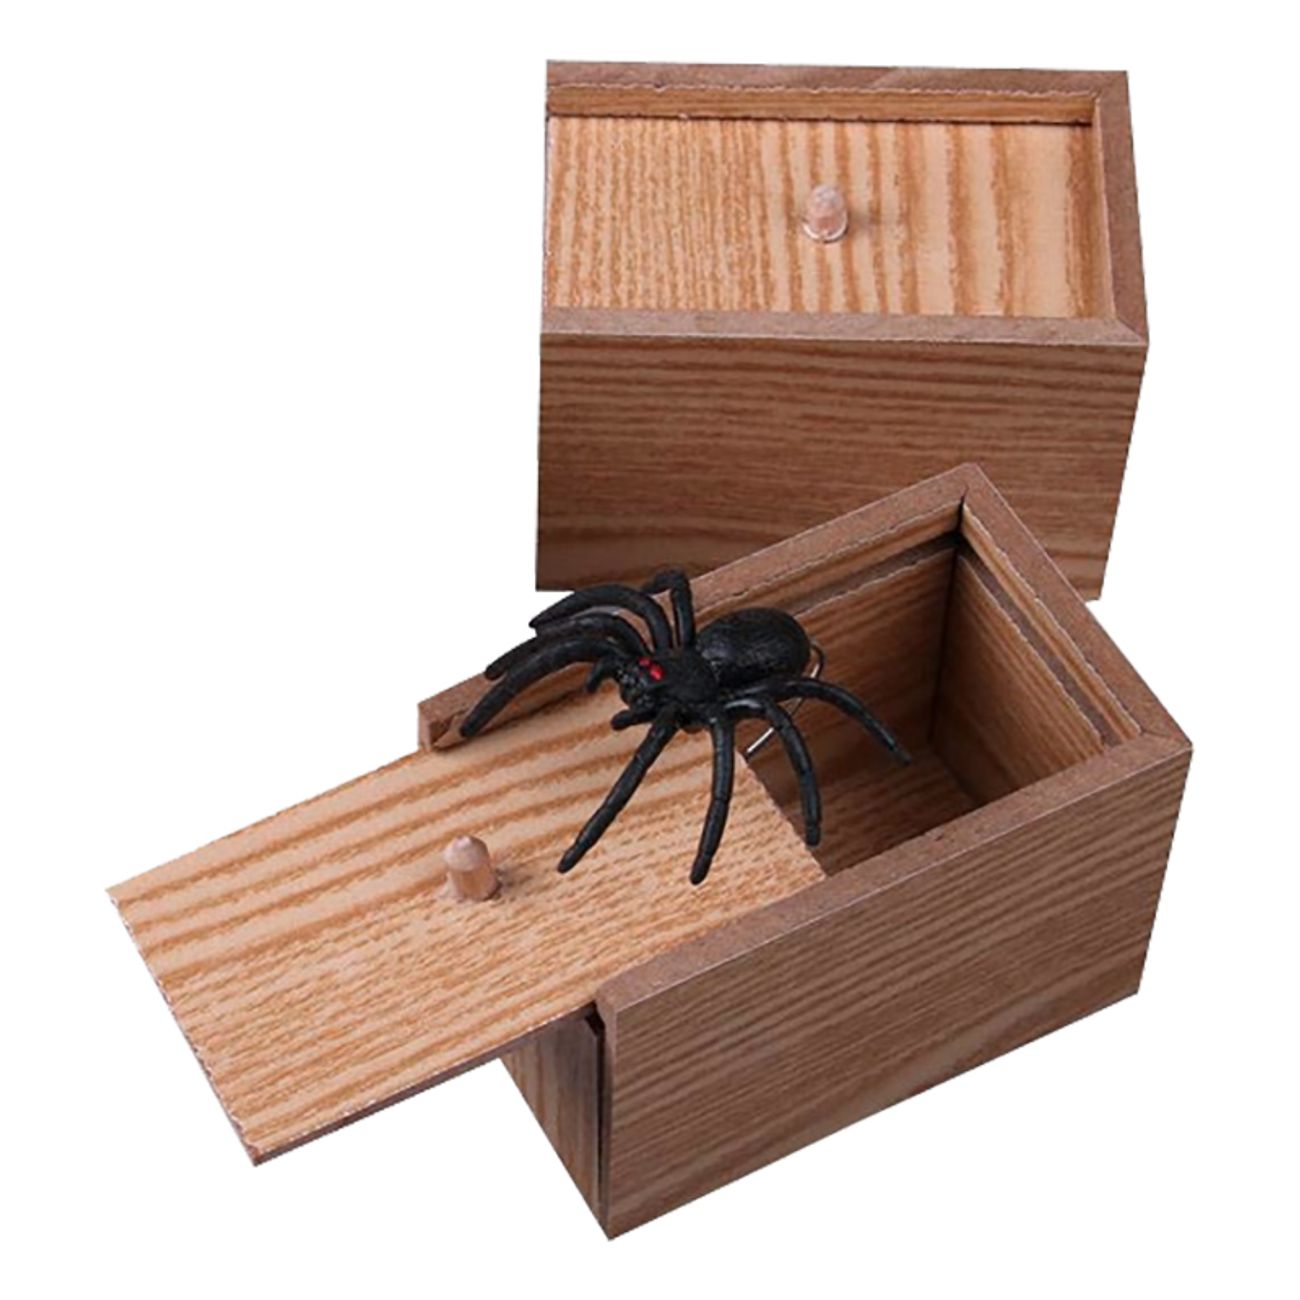 spider-box-1